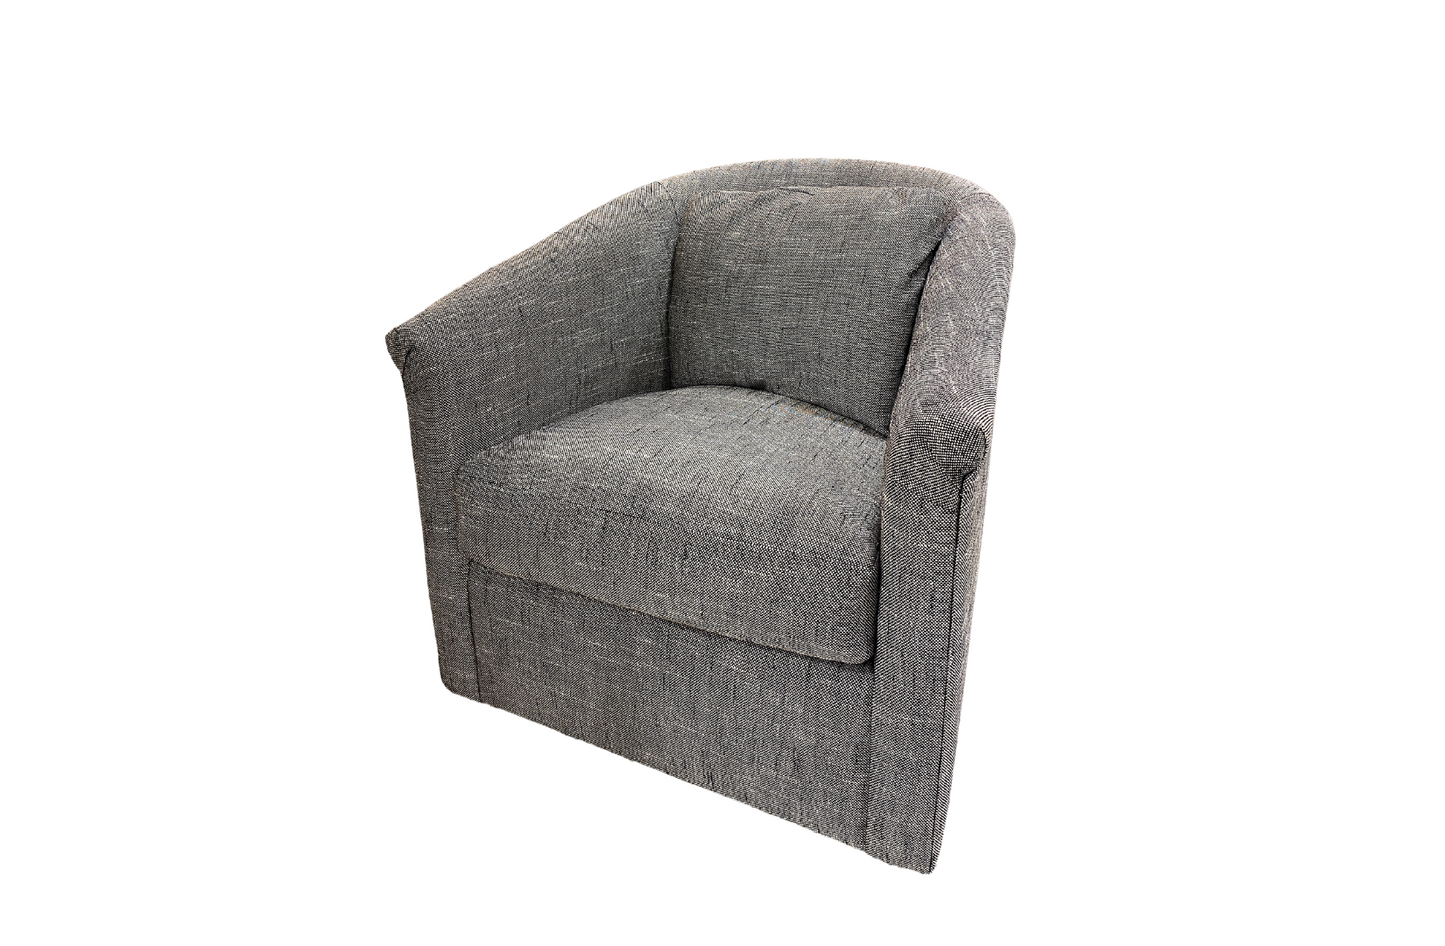 Wren Swivel Chair in Pepper Tweed